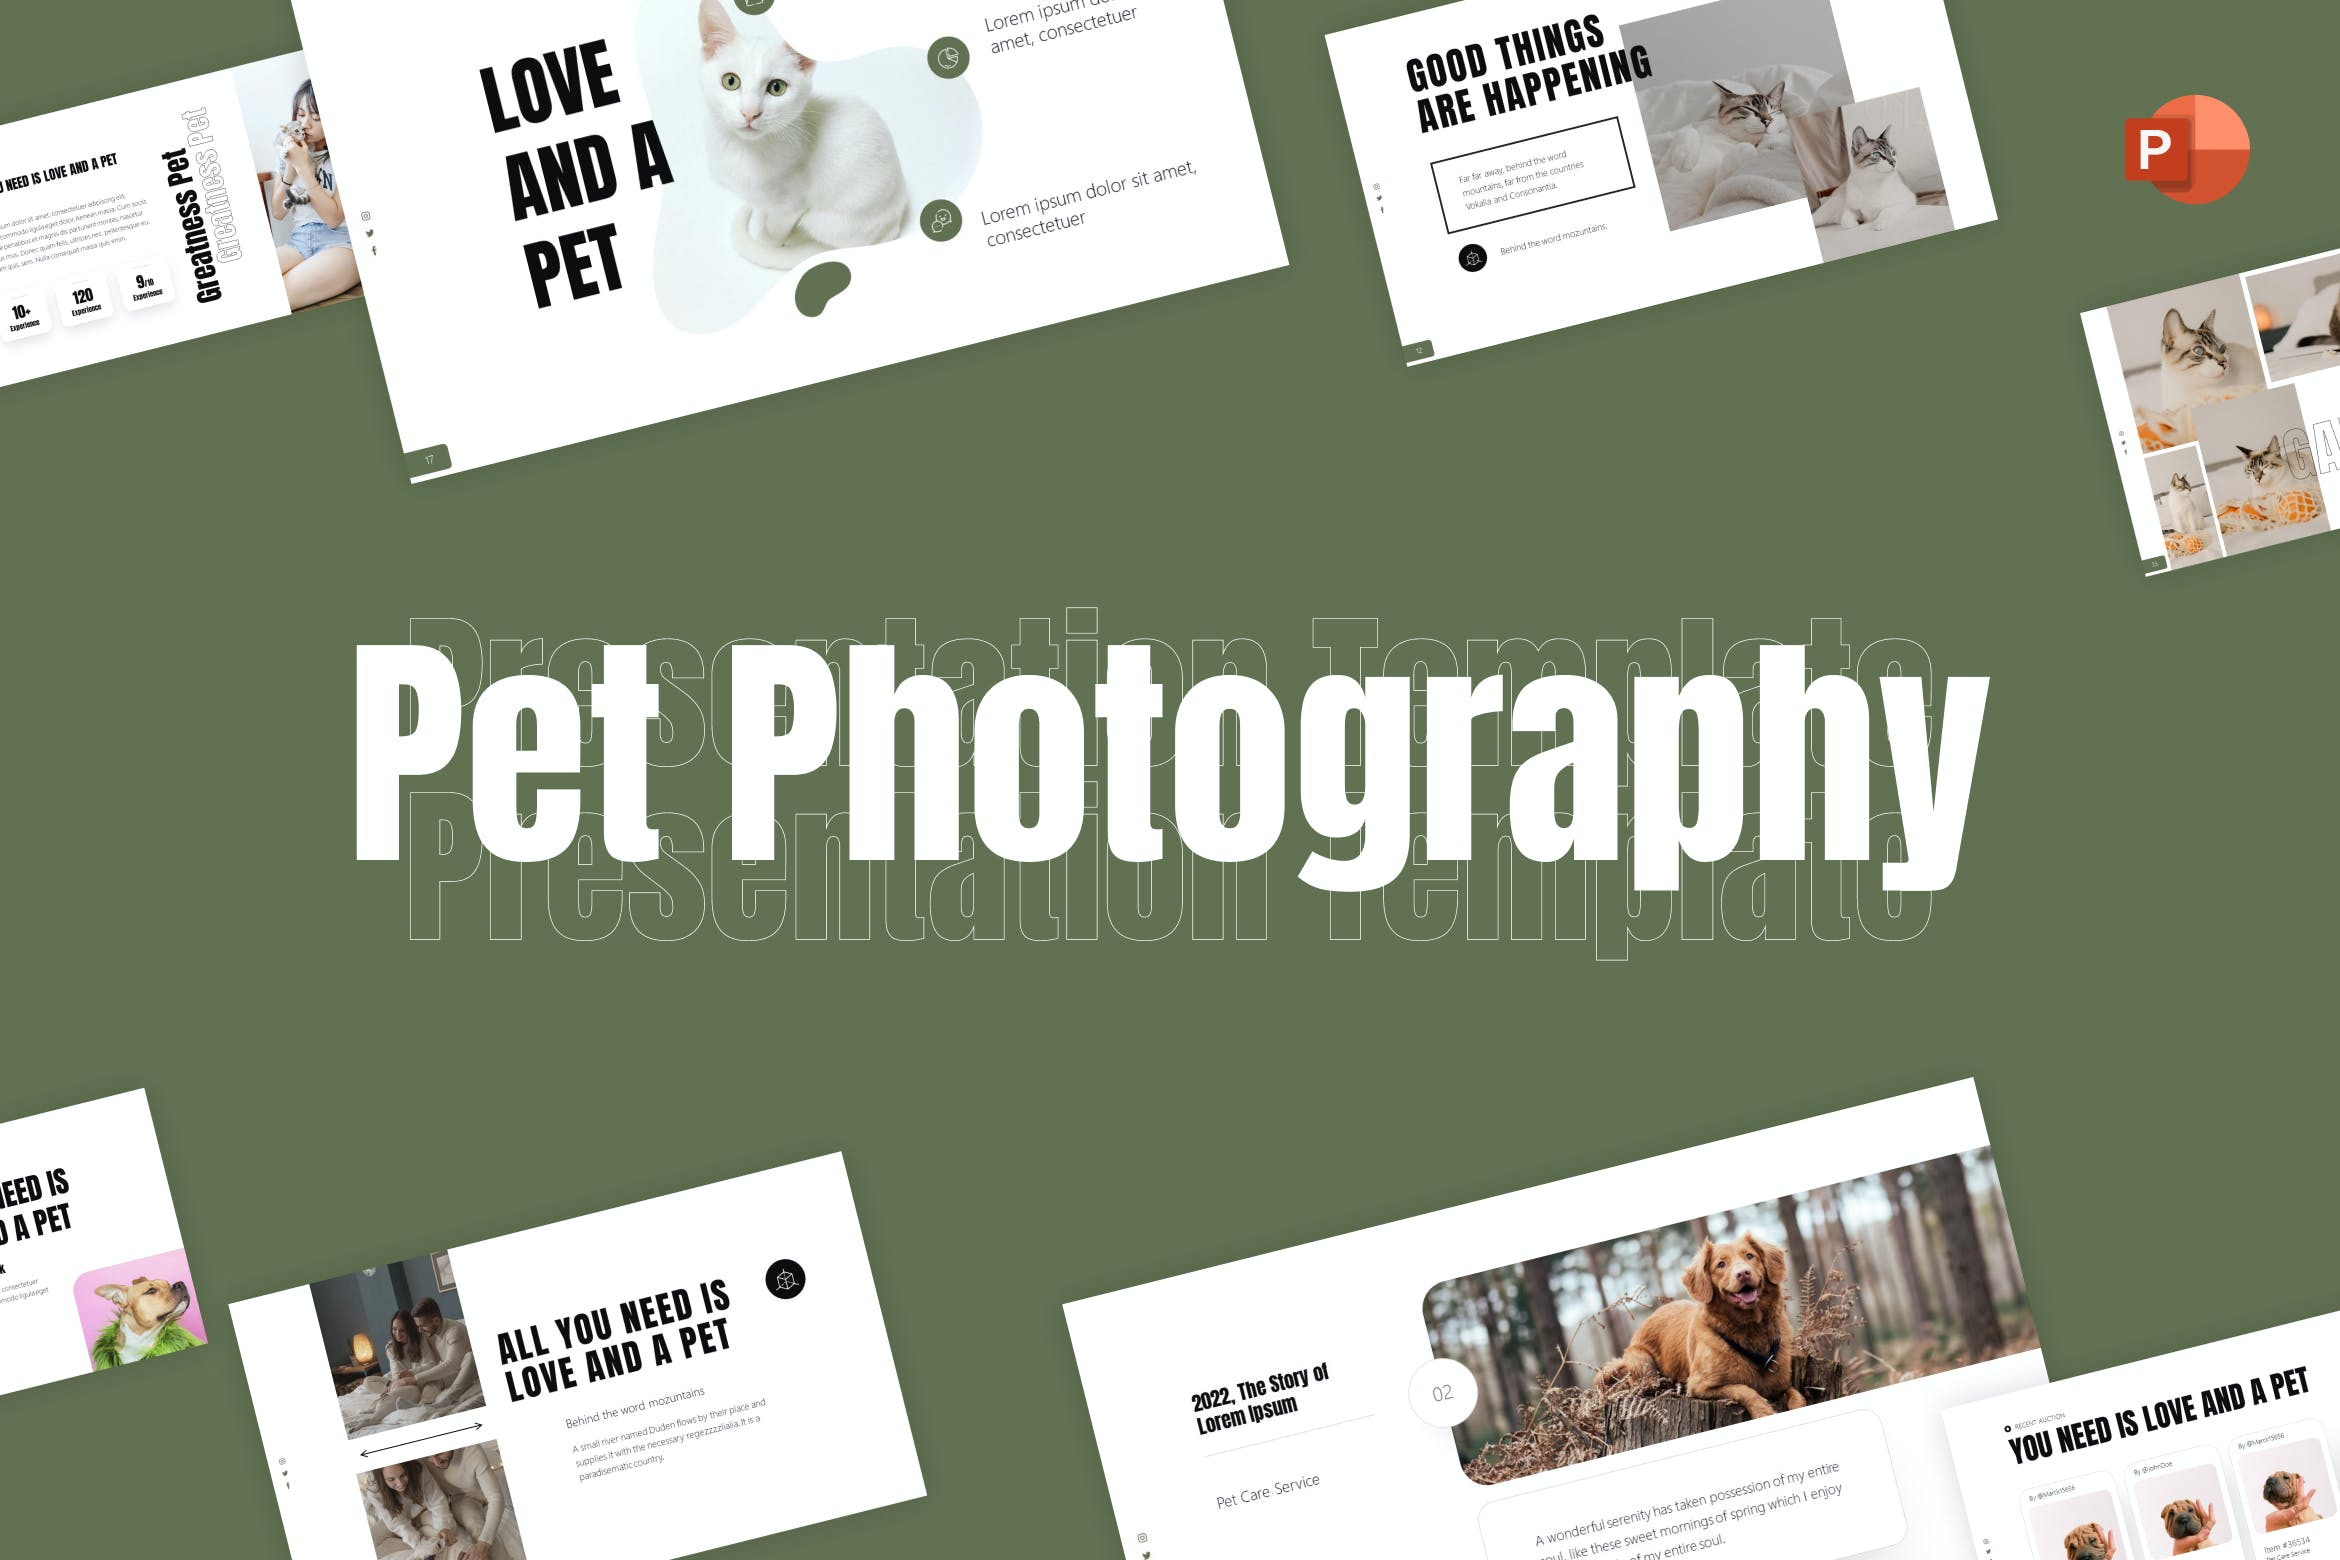 宠物摄影极简主义PPT幻灯片模板下载 Pet Photography Minimalist PowerPoint Template 幻灯图表 第1张